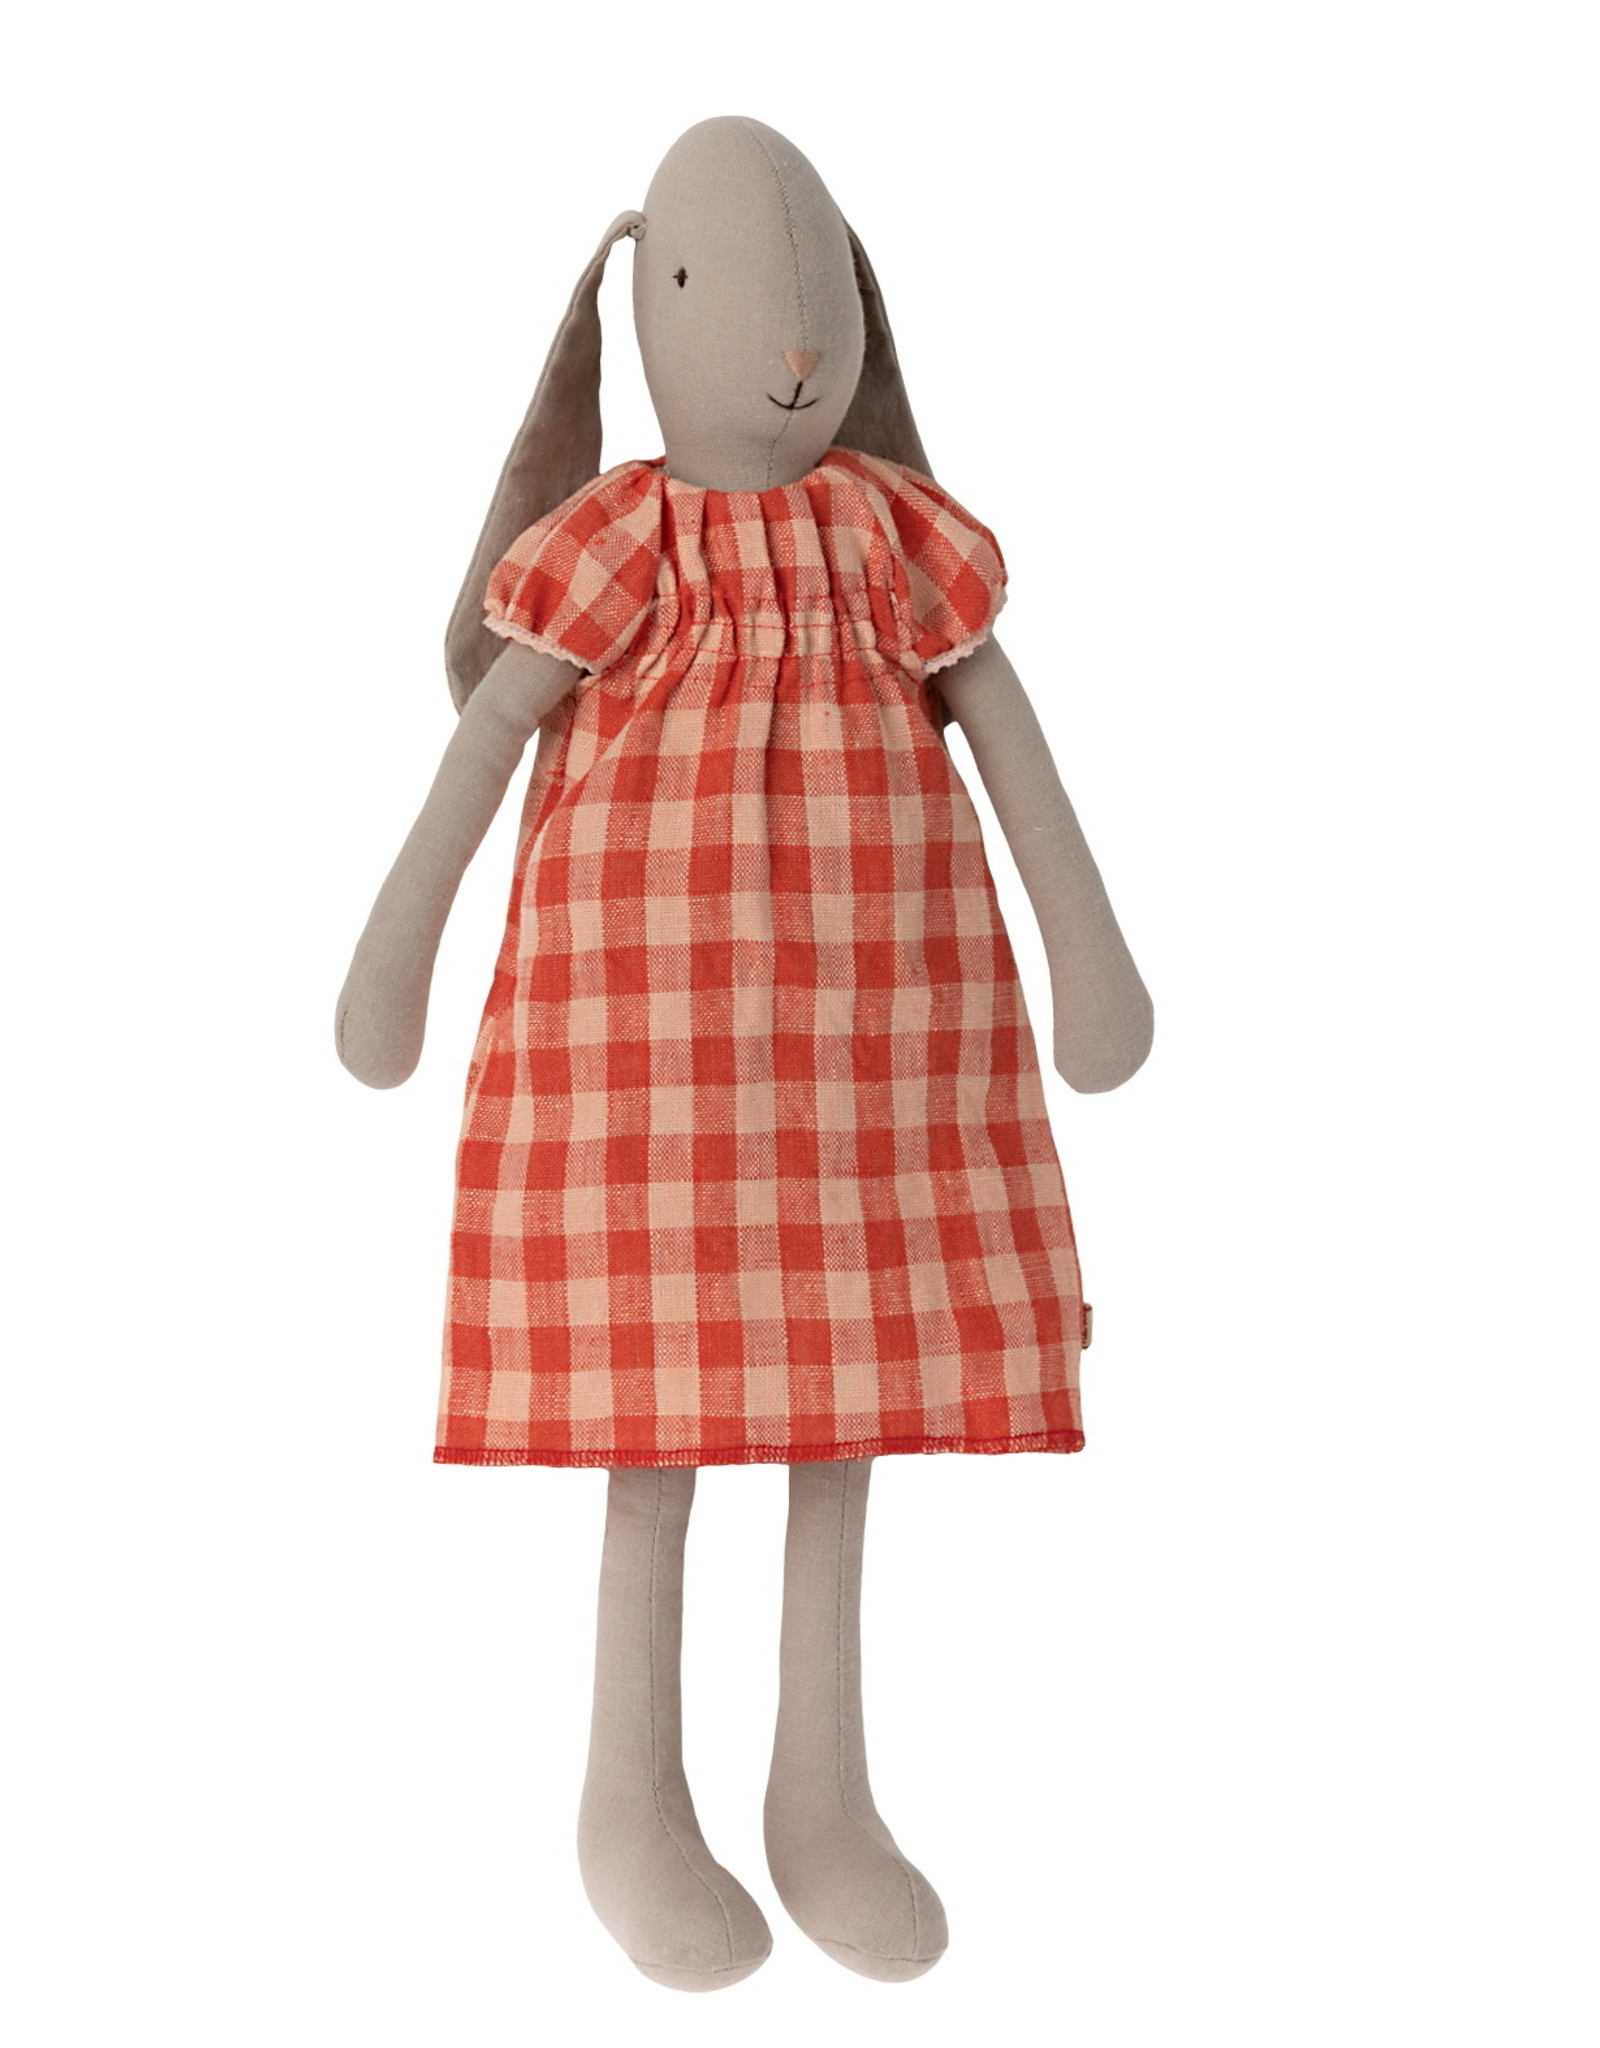 Maileg Maileg - Bunny Size 3 Dress